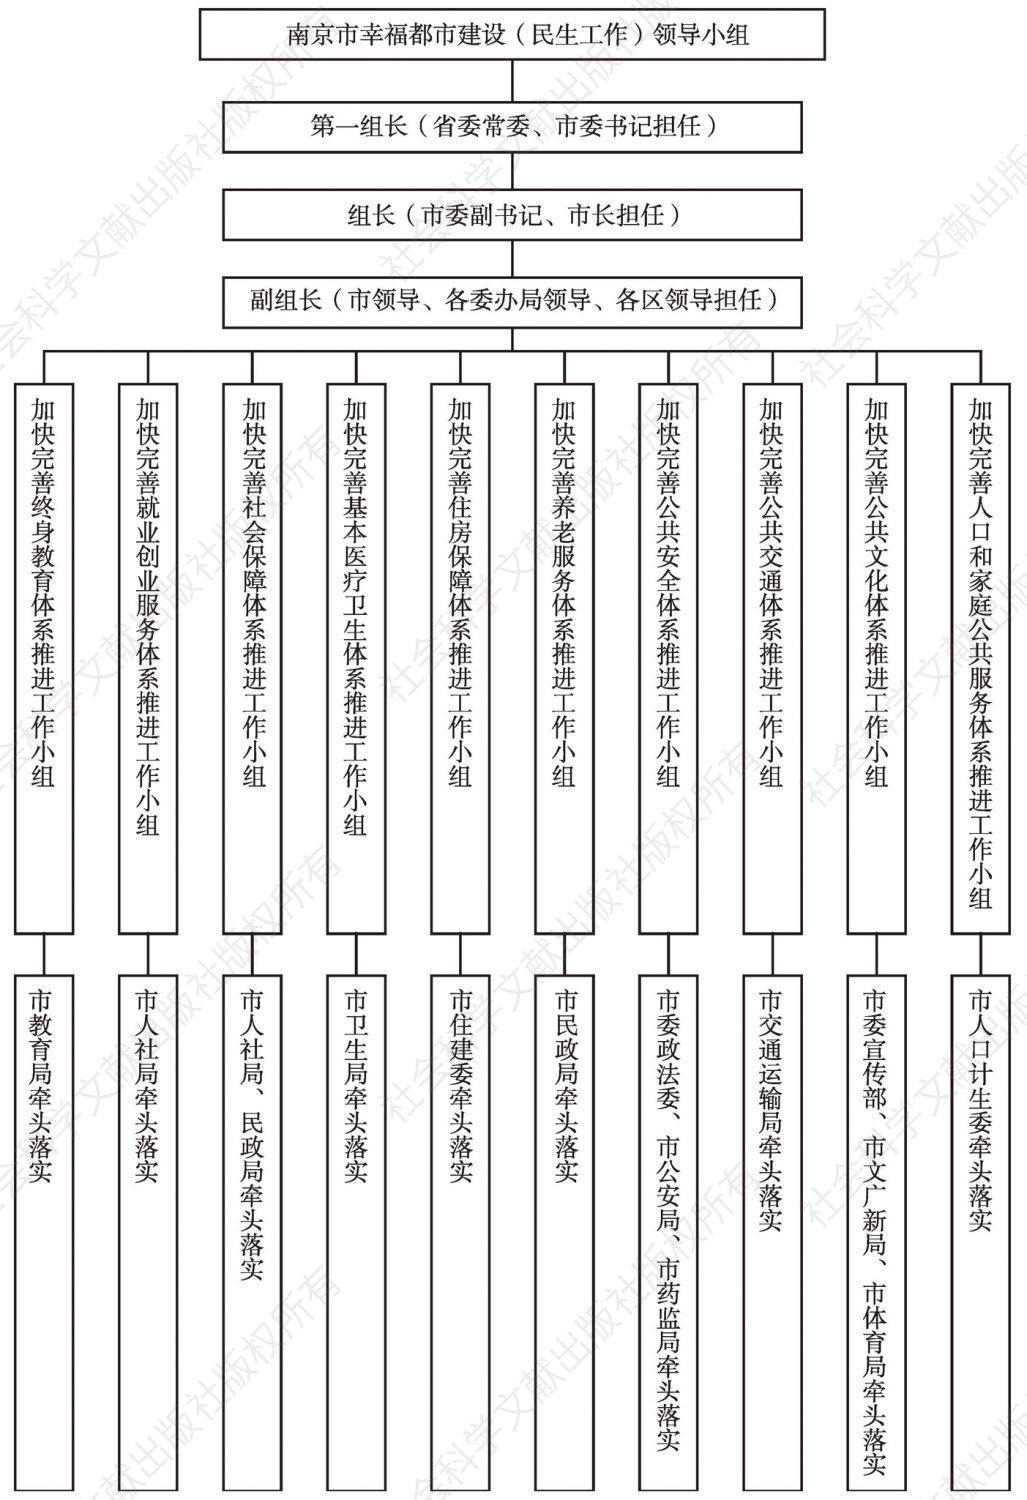 图1 南京市幸福都市建设（民生工作）领导小组组织体系